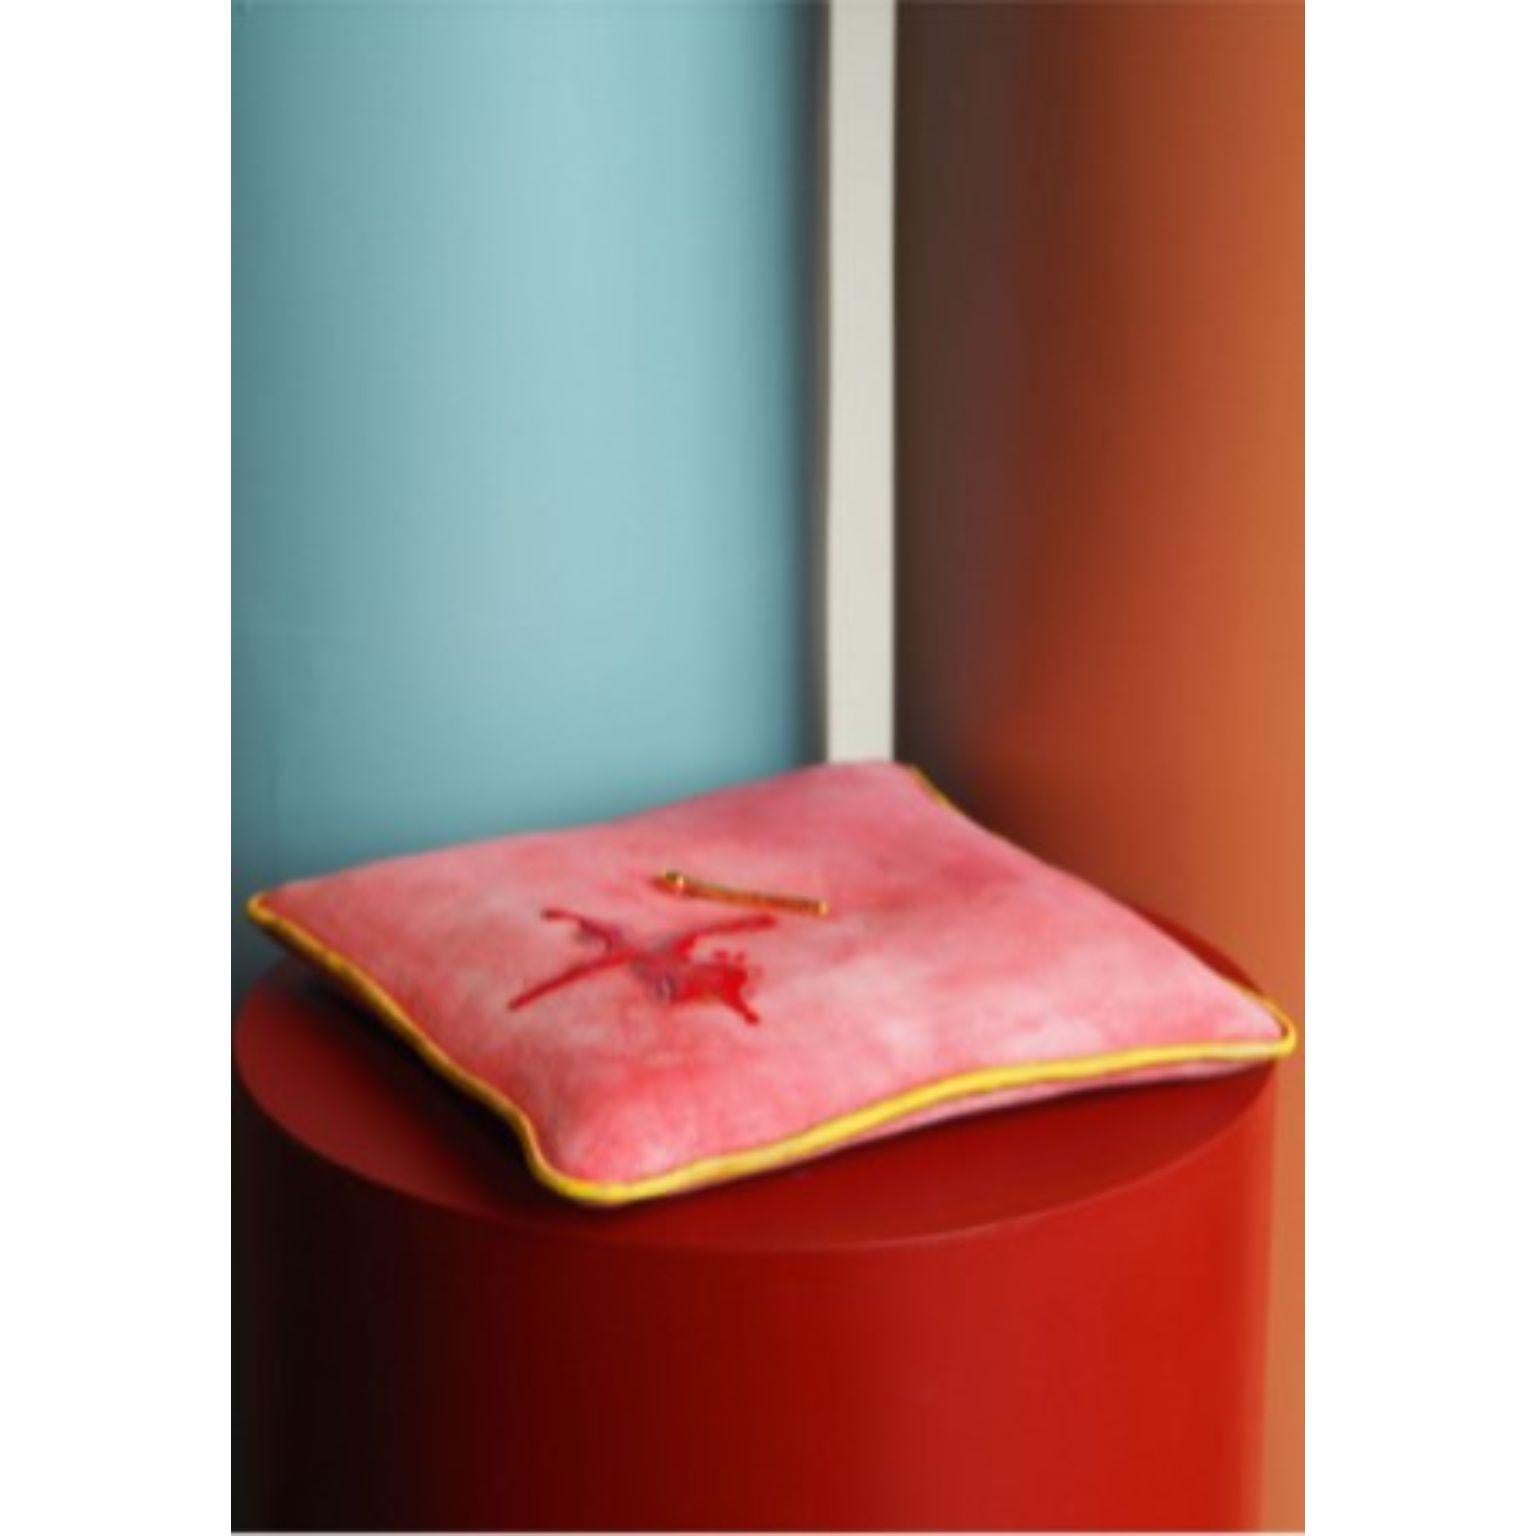 Artefakte der Disharmonie rotes kissen Skulptur von Tero Kuitunen
MATERIAL: Handgefertigte Keramik, vergoldet.
Abmessungen: T39 x B 39 x H29cm

Einzigartiges Stück, Teil der Museumsausstellung.

Der 1986 geborene Designer Tero Kuitunen lässt sich